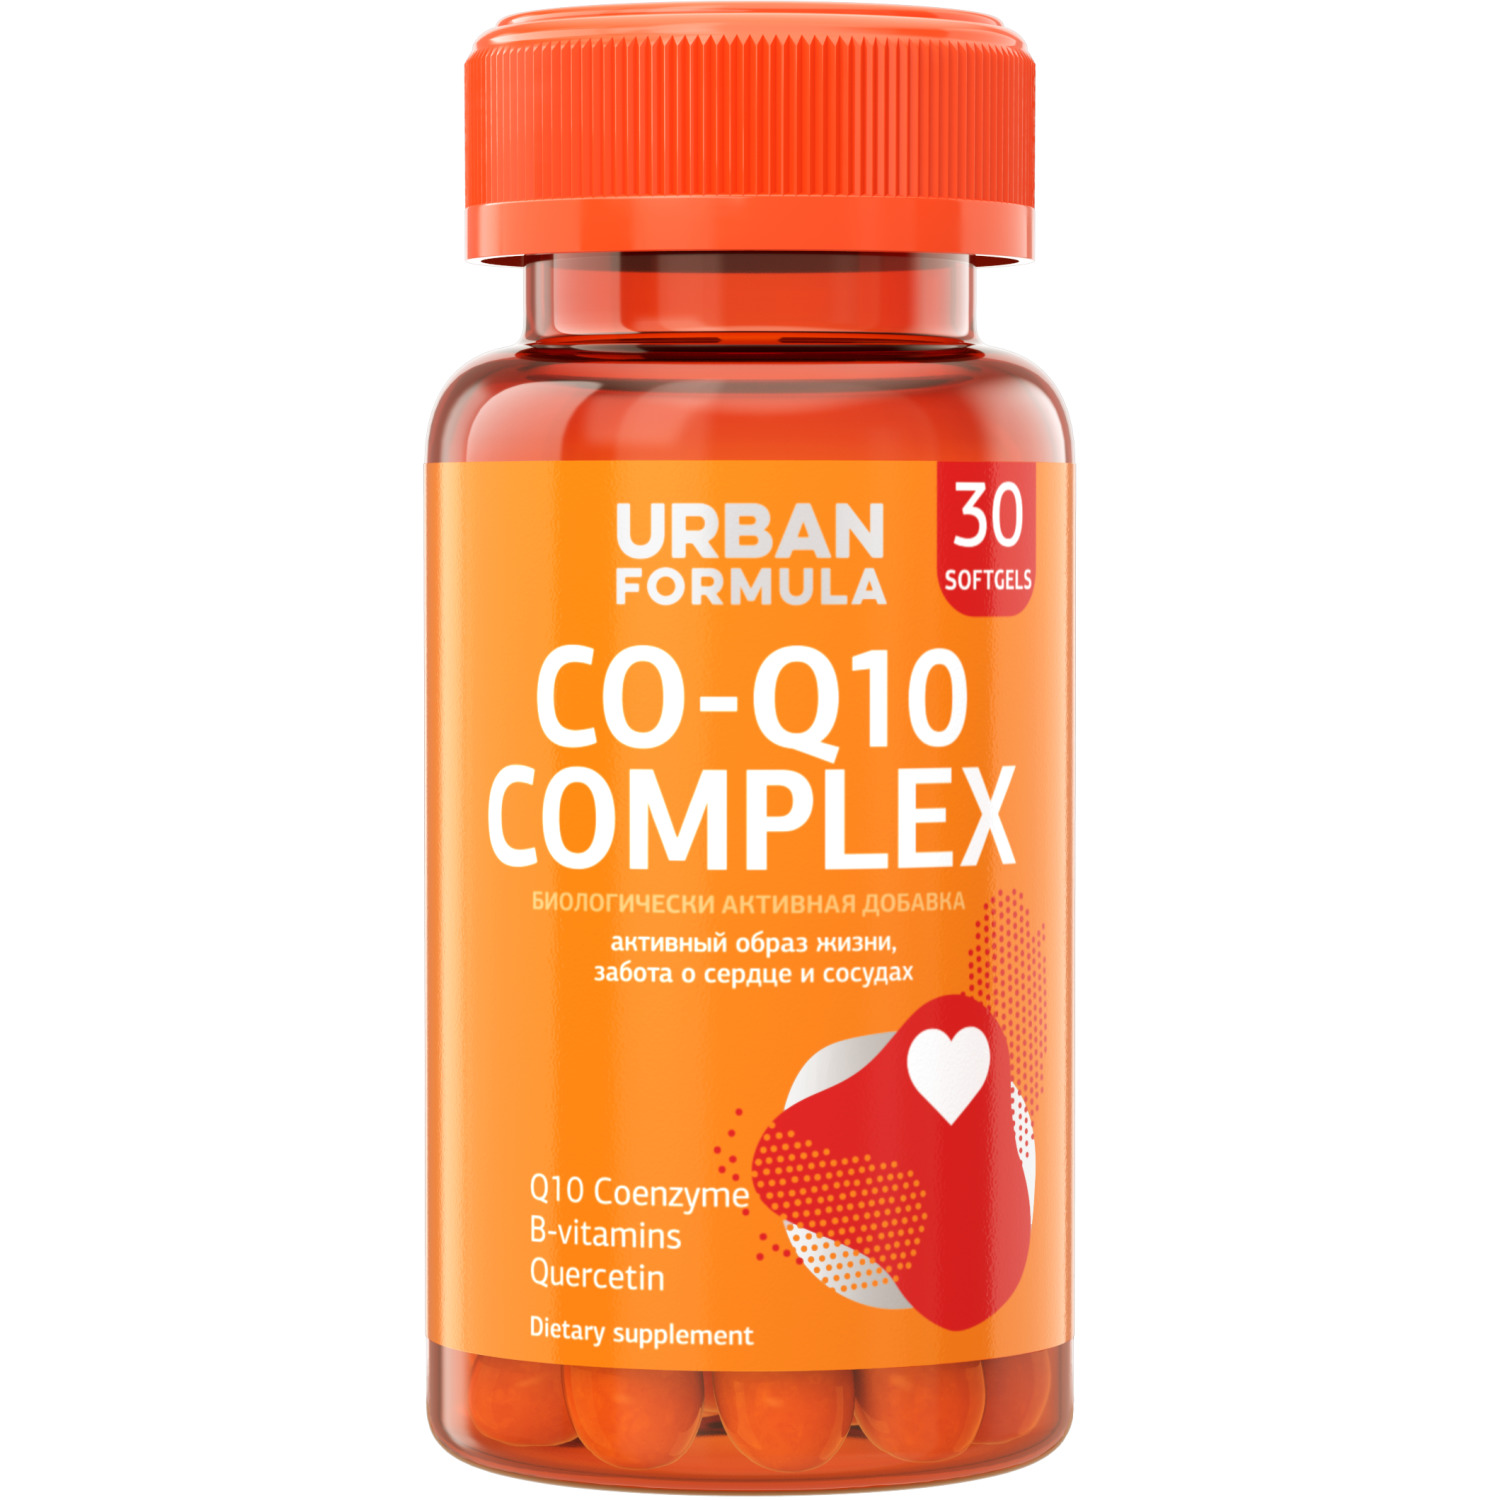 Комплекс для сосудов и сердца Urban Formula с Q10 Co-Q10 Complex капсулы 30 шт.